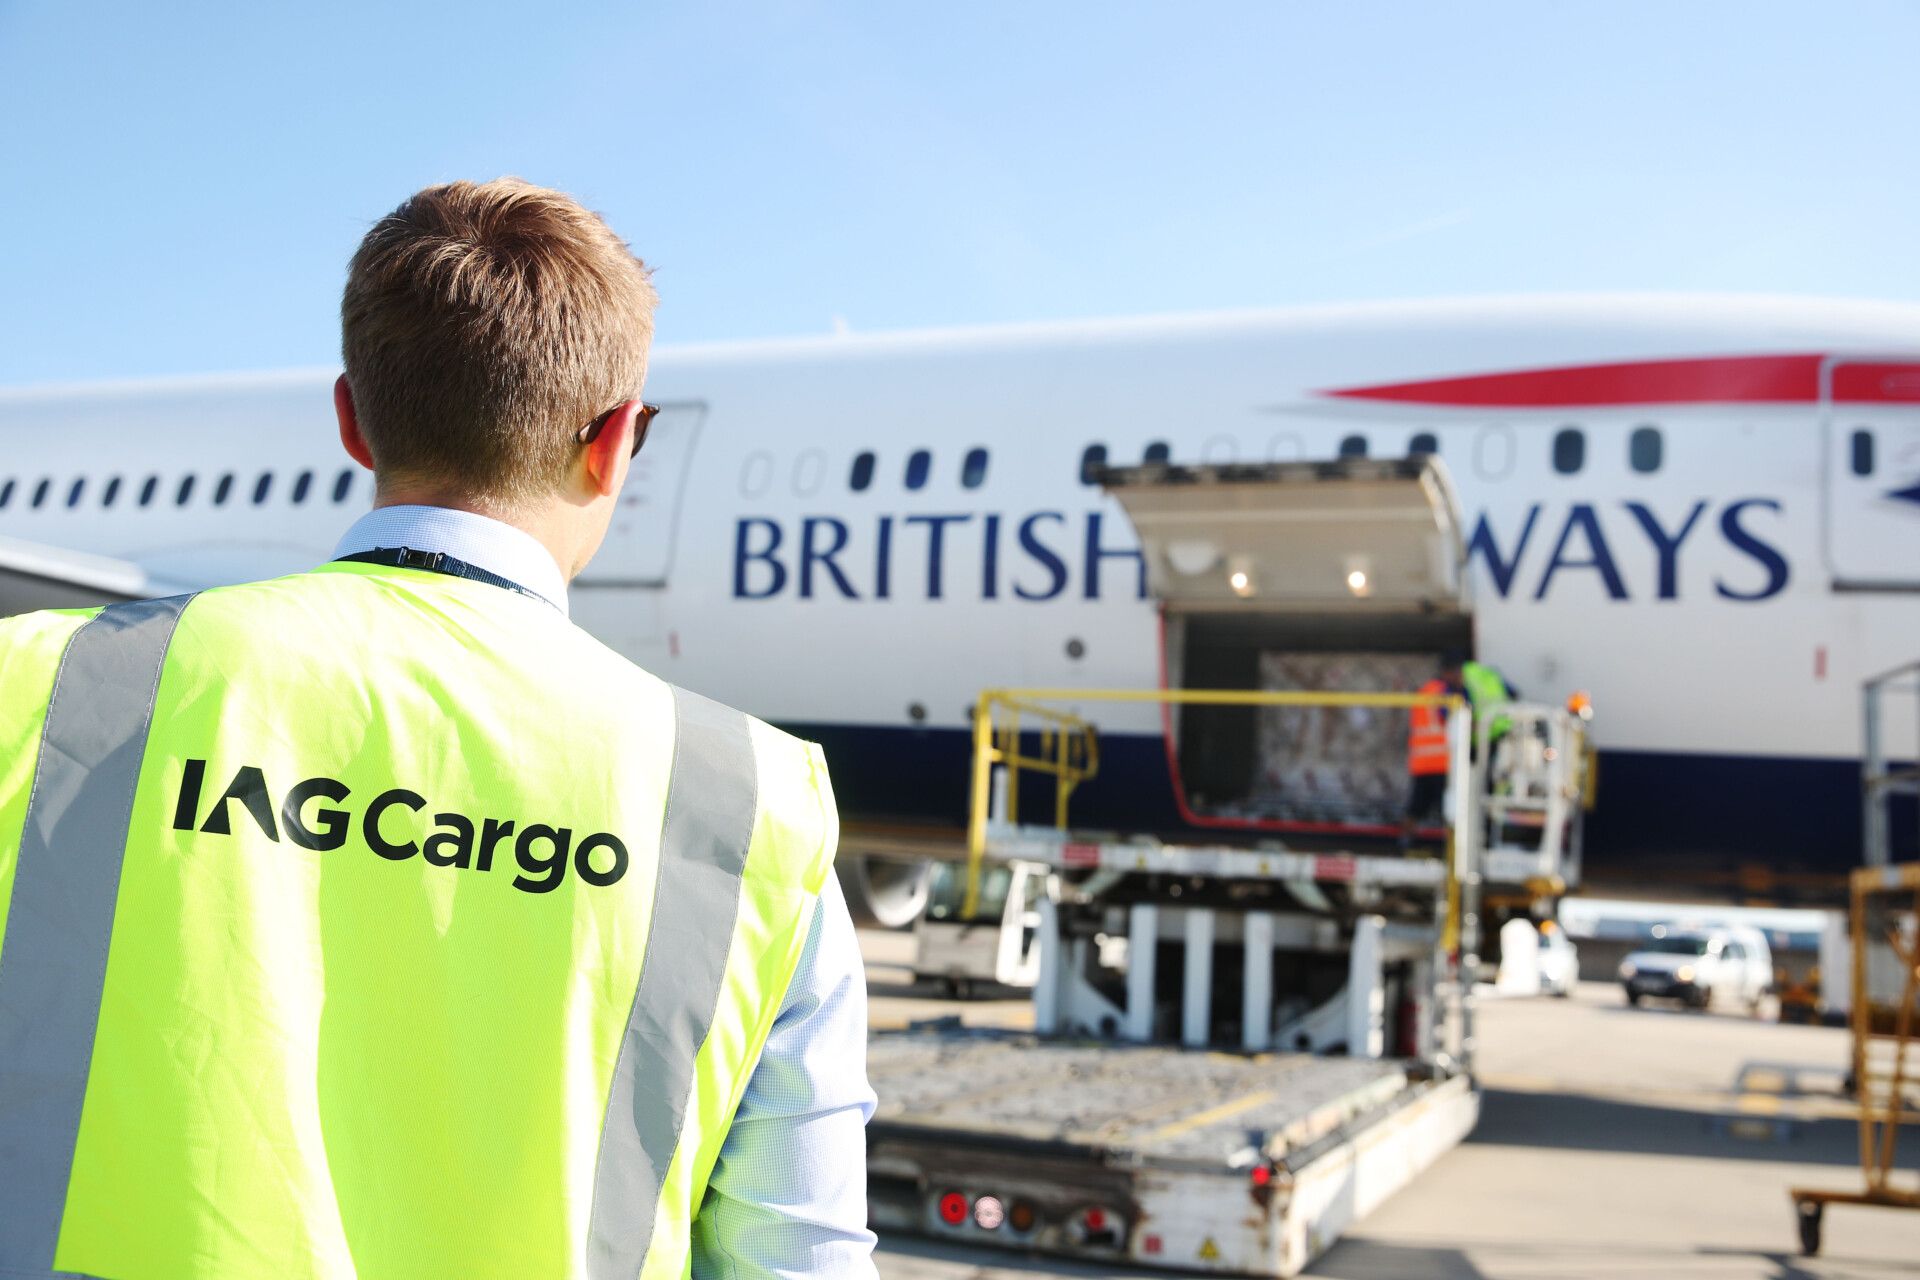 IAG Cargo British Airways hold